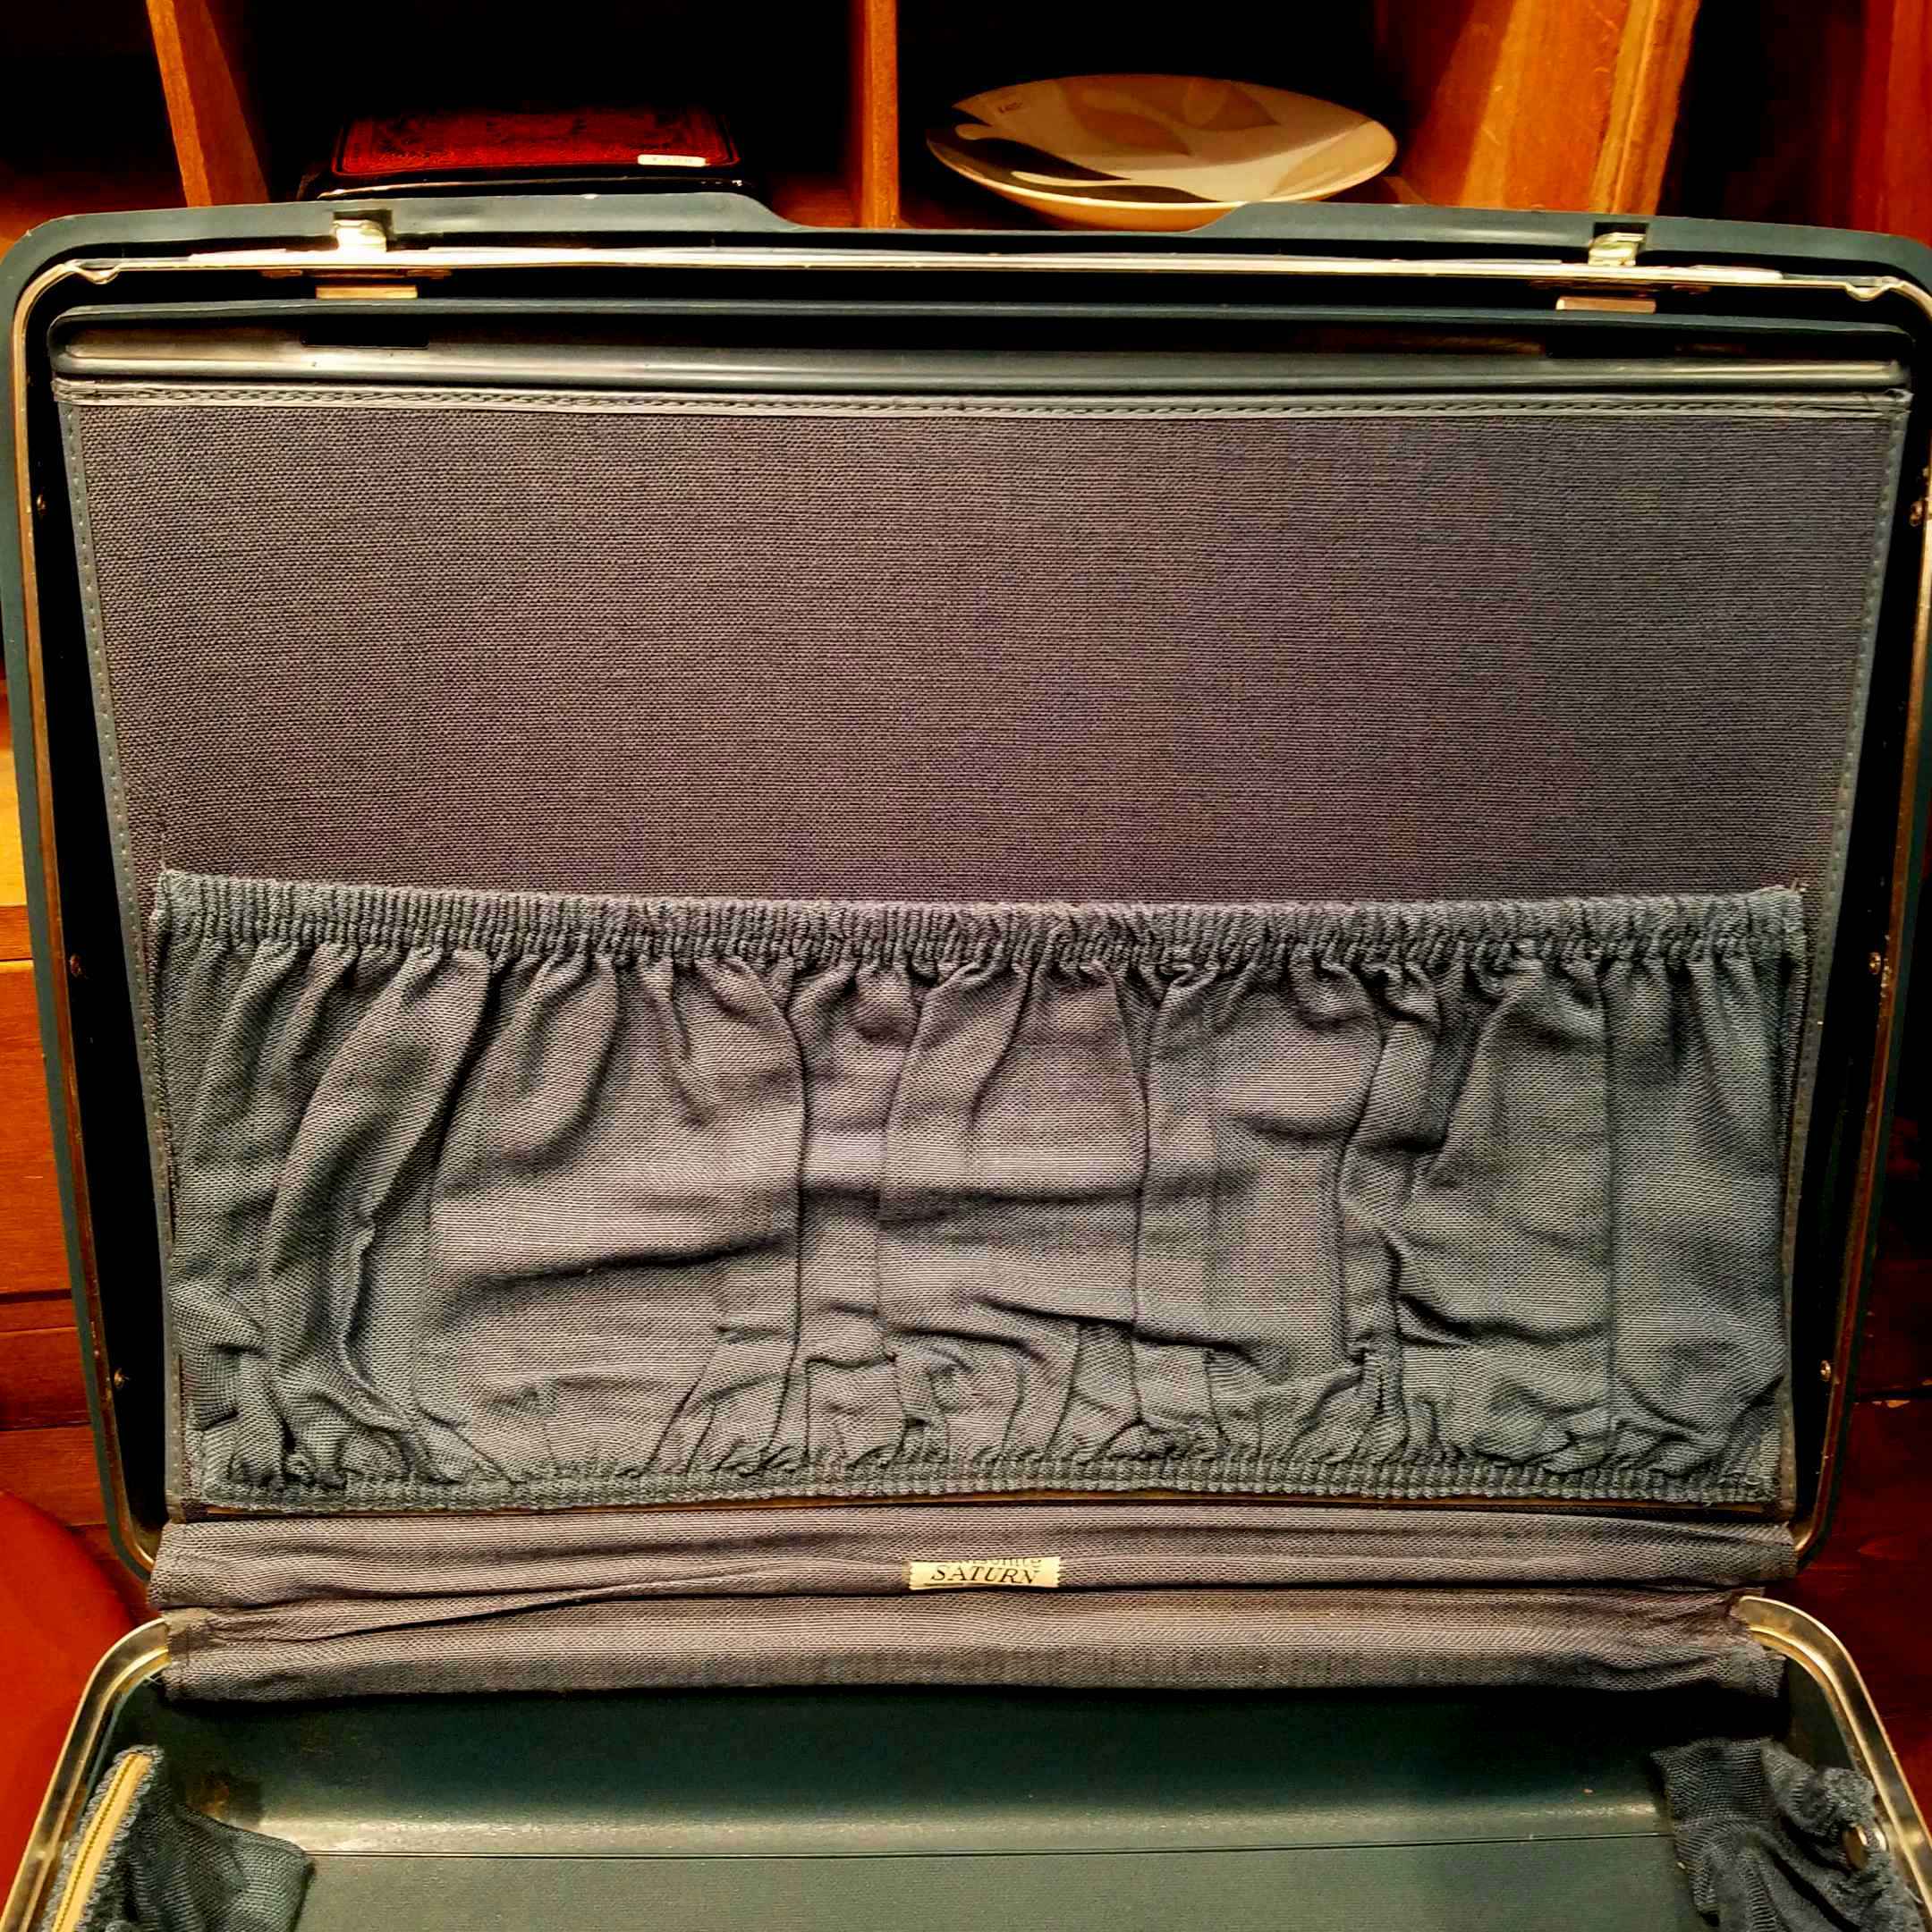 ヴィンテージ・サムソナイト スーツケース - [Sold Out]過去の販売商品